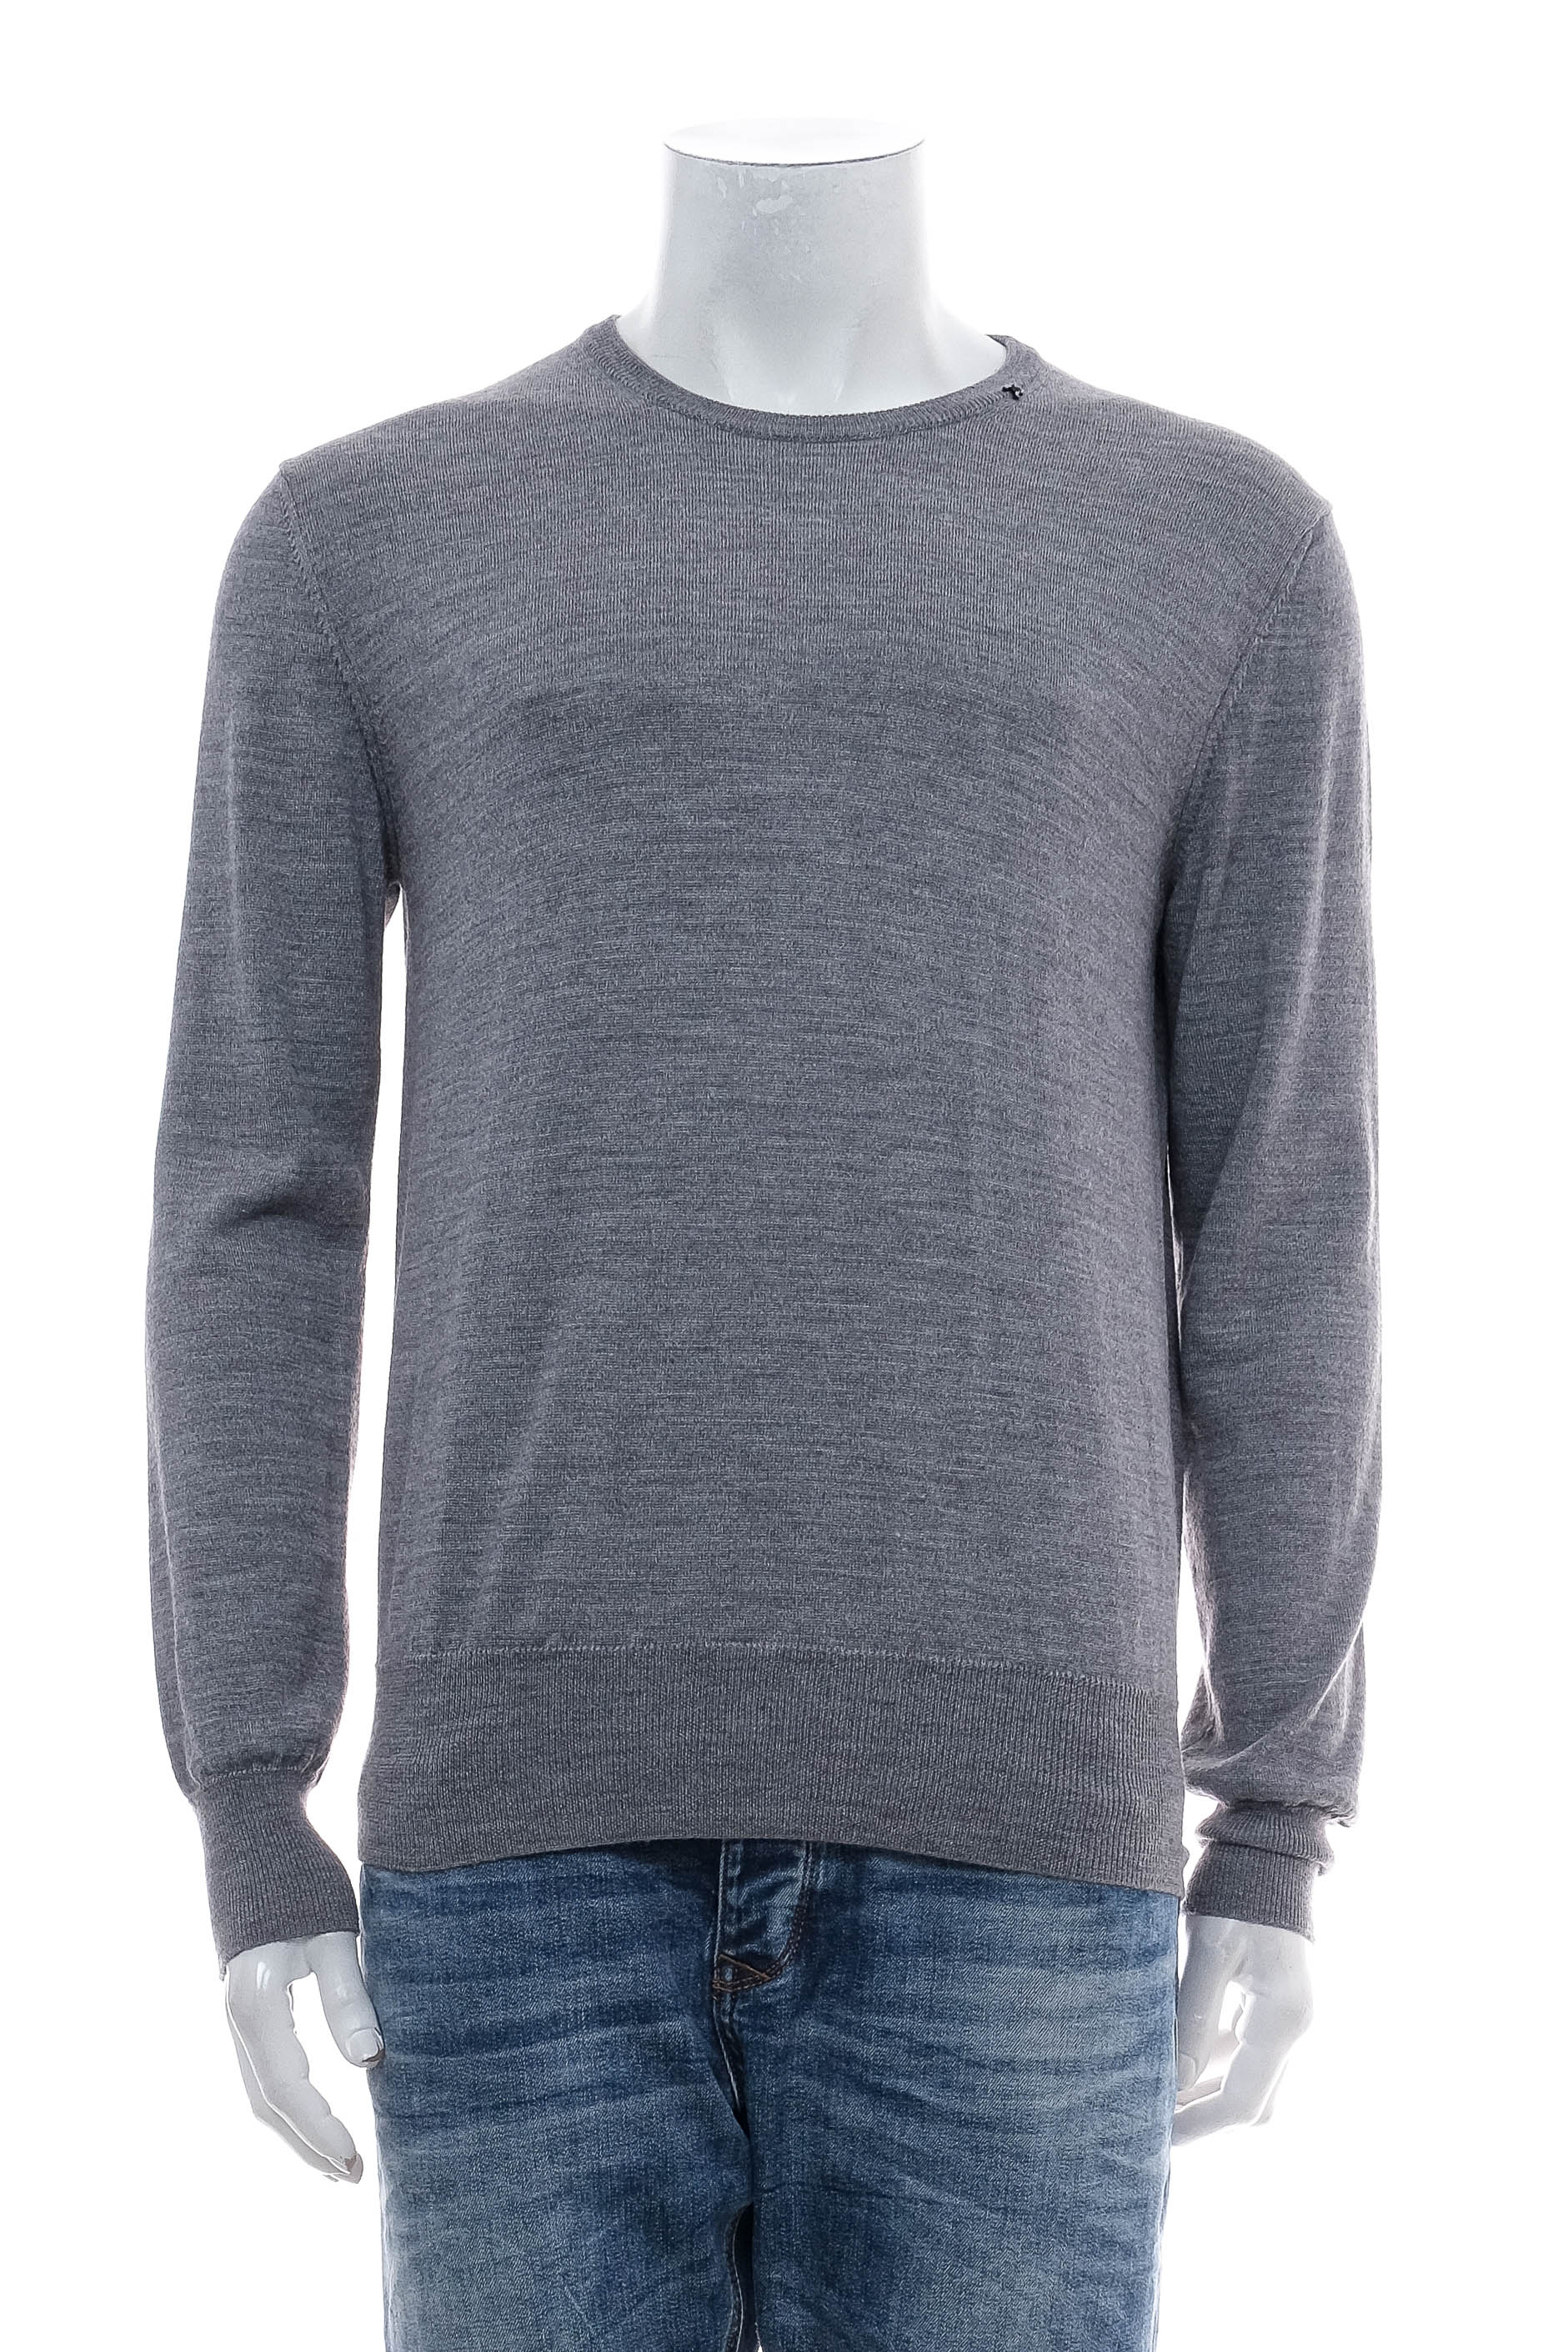 Men's sweater - REPLAY - 0